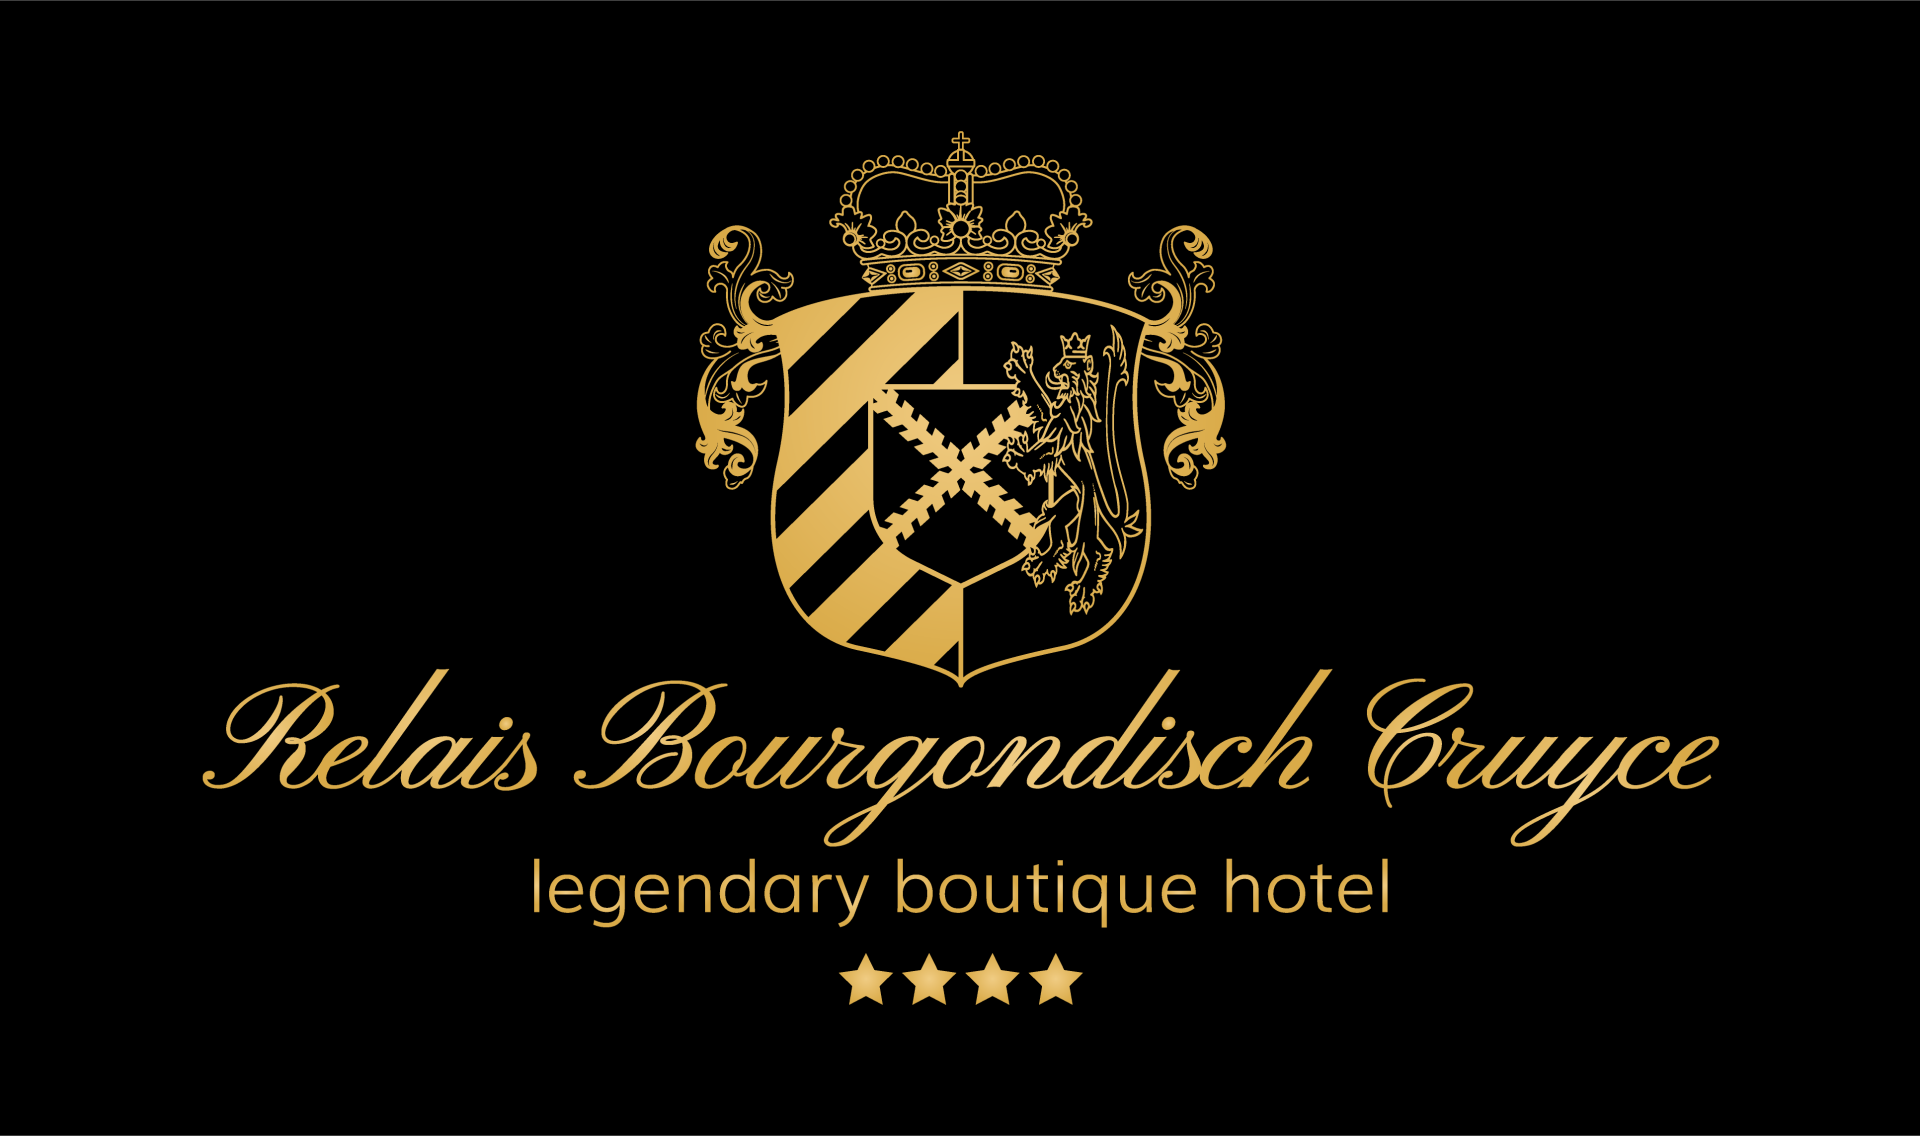 Hotel Relais Bourgondisch Cruyce